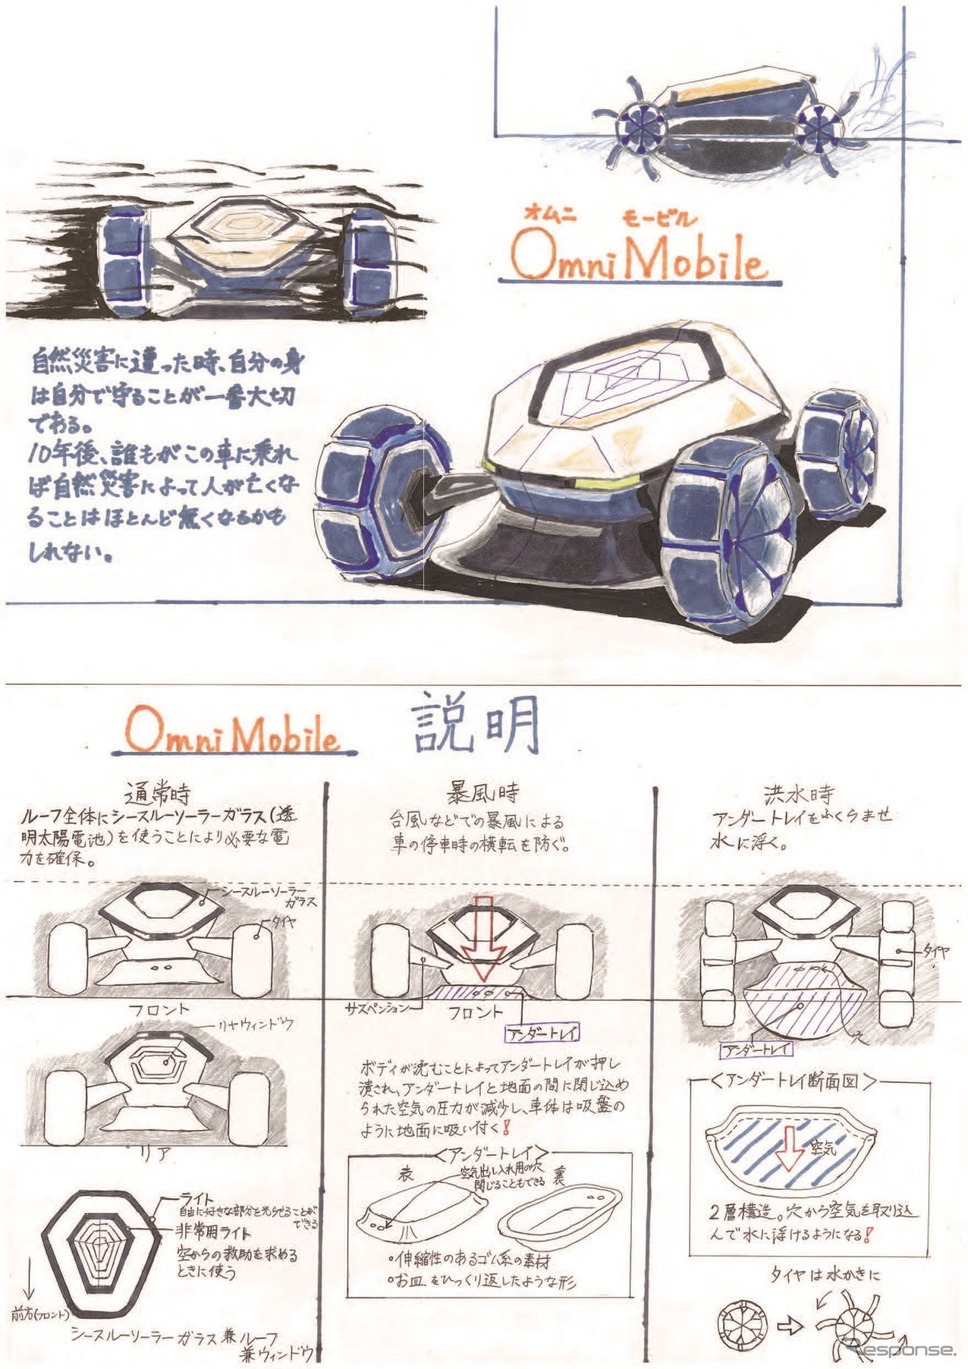 カーデザイン大賞：高橋洋平さん　福島県立福島高等学校2年…『Omni Mobile』《写真提供  自動車技術会》